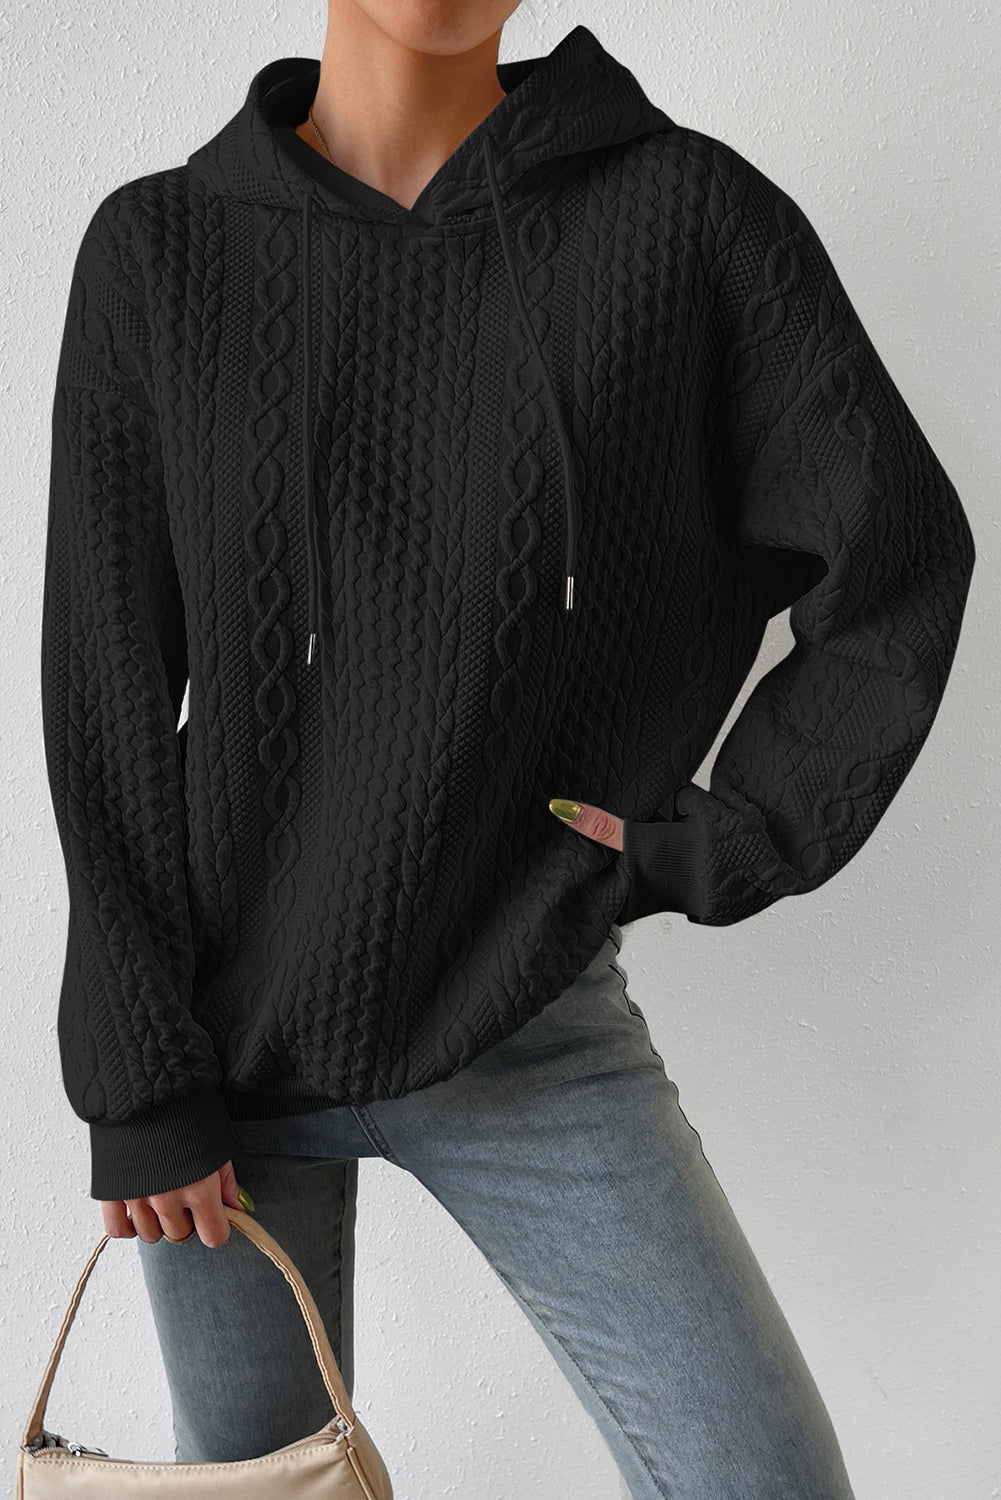 Črn pulover s kapuco z vrvico za prosti čas s teksturo kabla